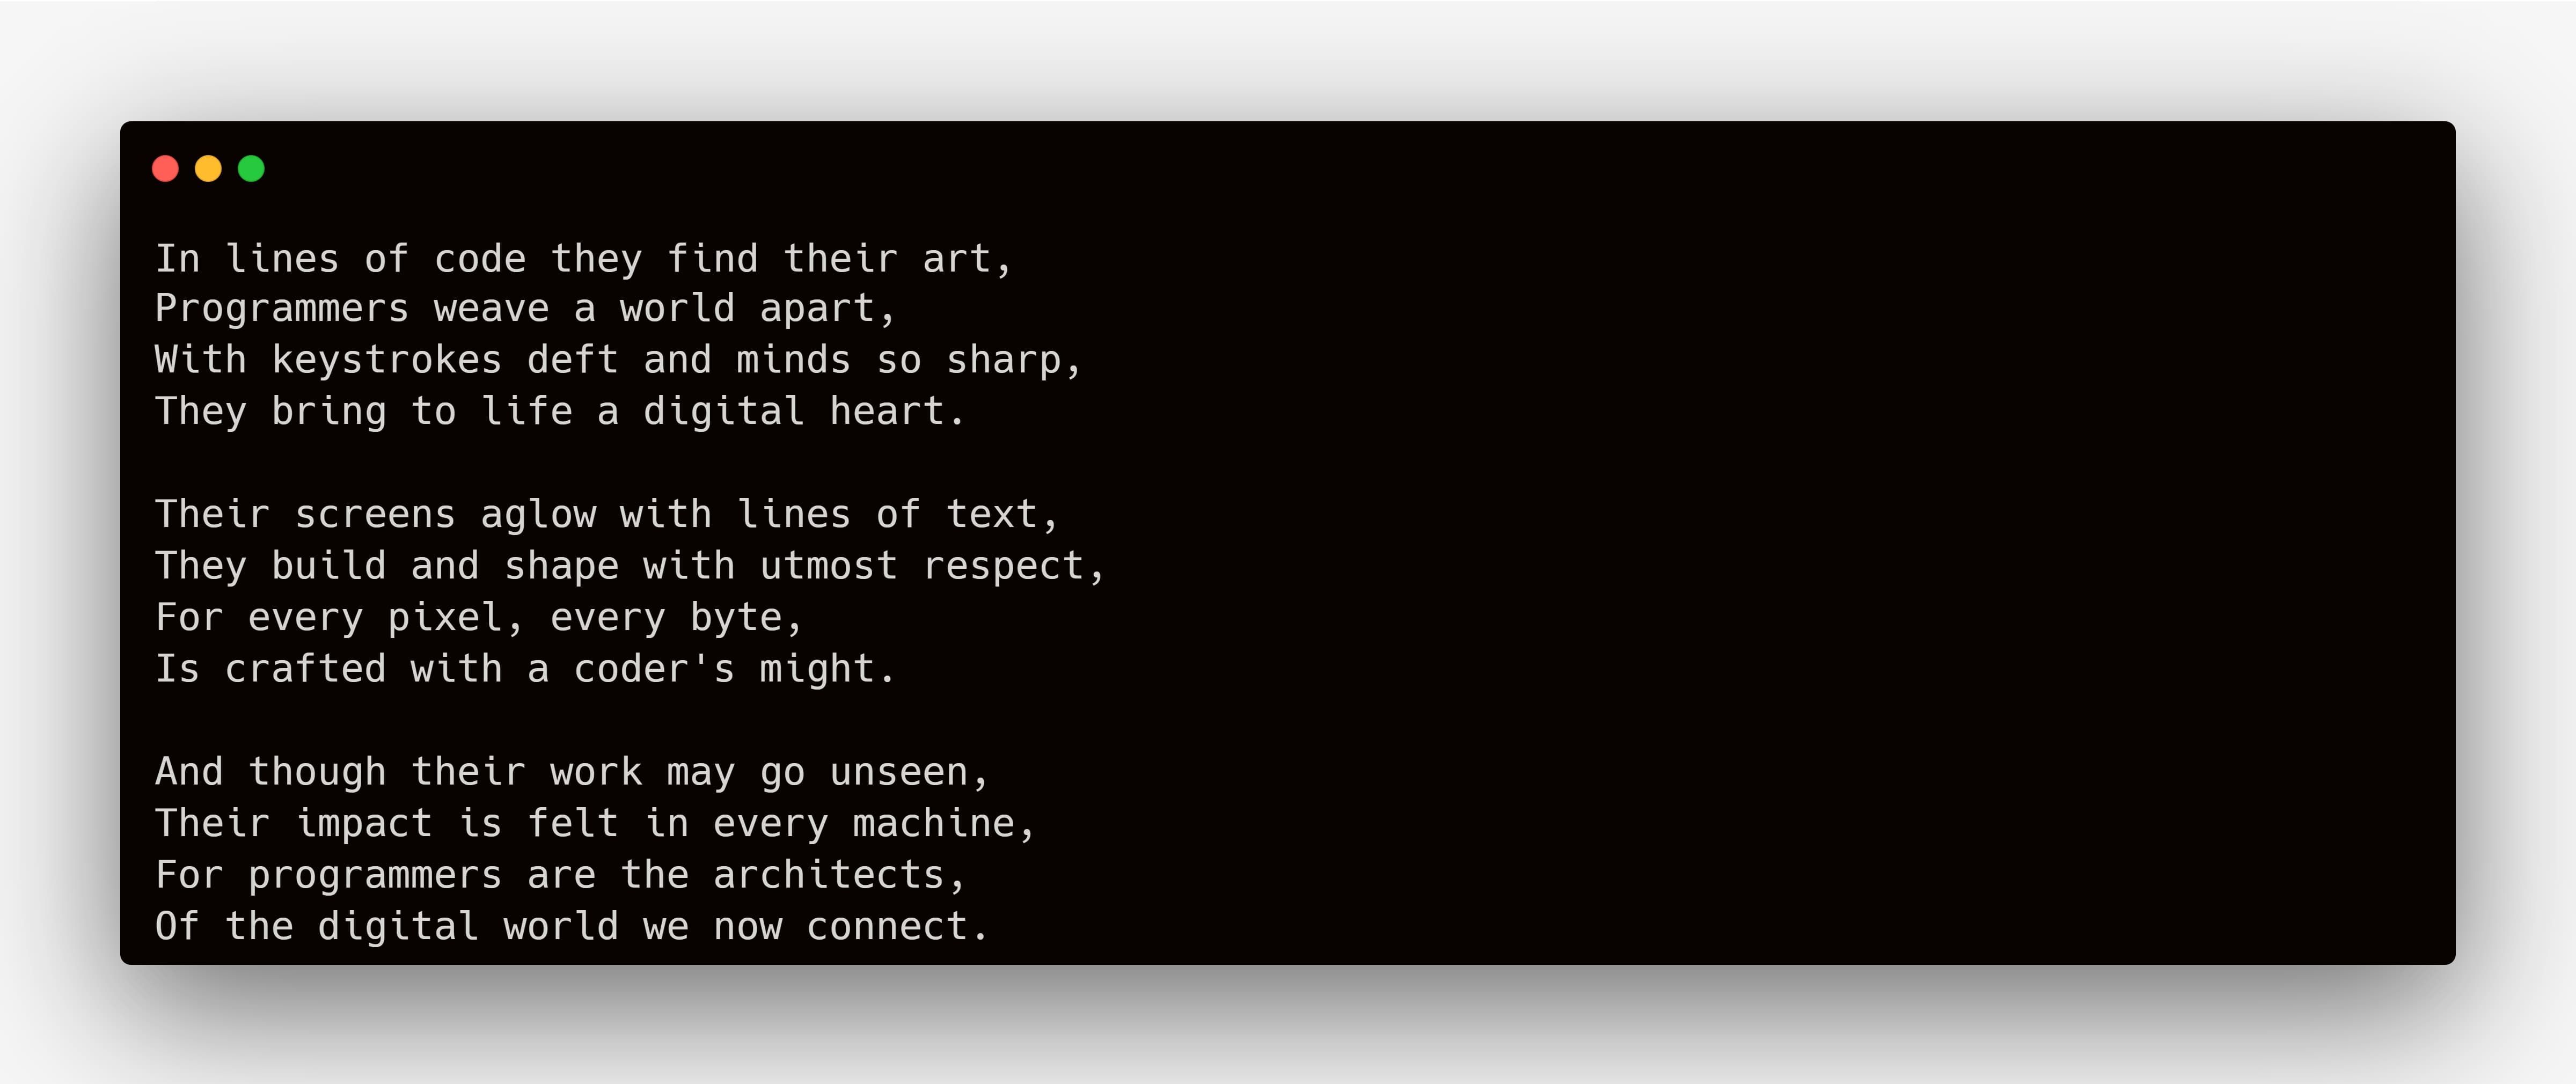 Sebuah puisi tentang programmer